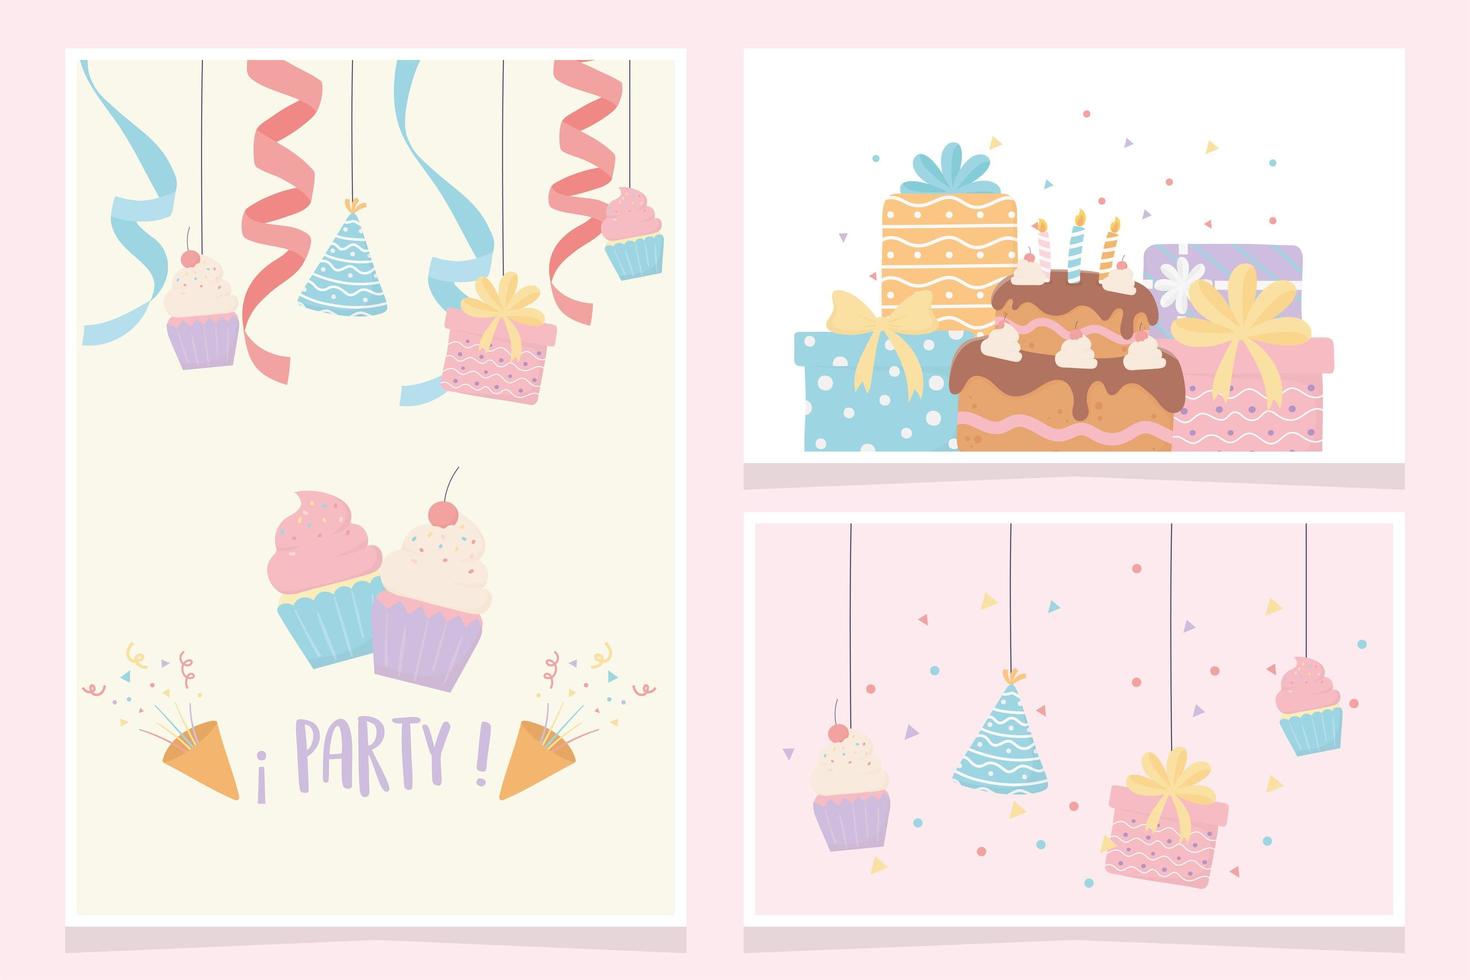 geburtstag festliche feier kuchen cupcakes geschenke party dekoration karten vektor